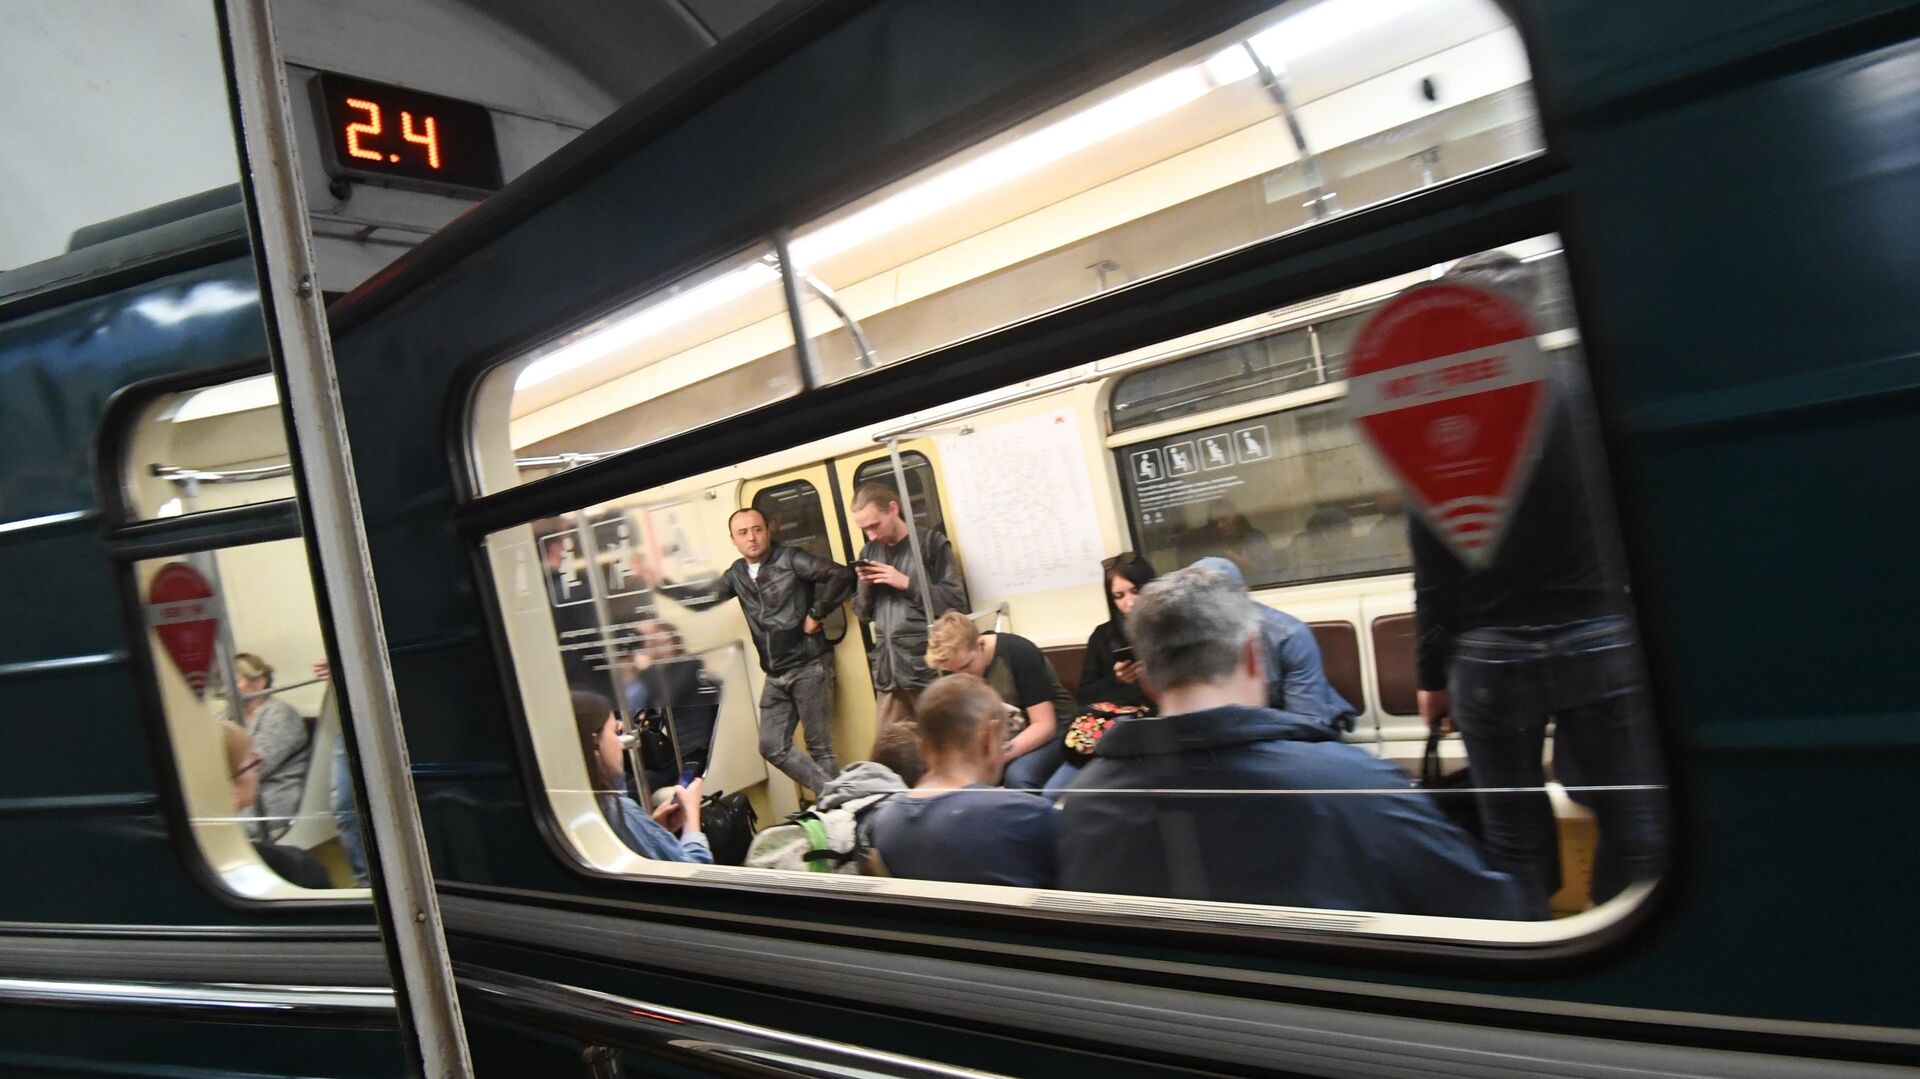 Дарья Марку: "Трансмашхолдинг" готов строить вагоны метро без сидений